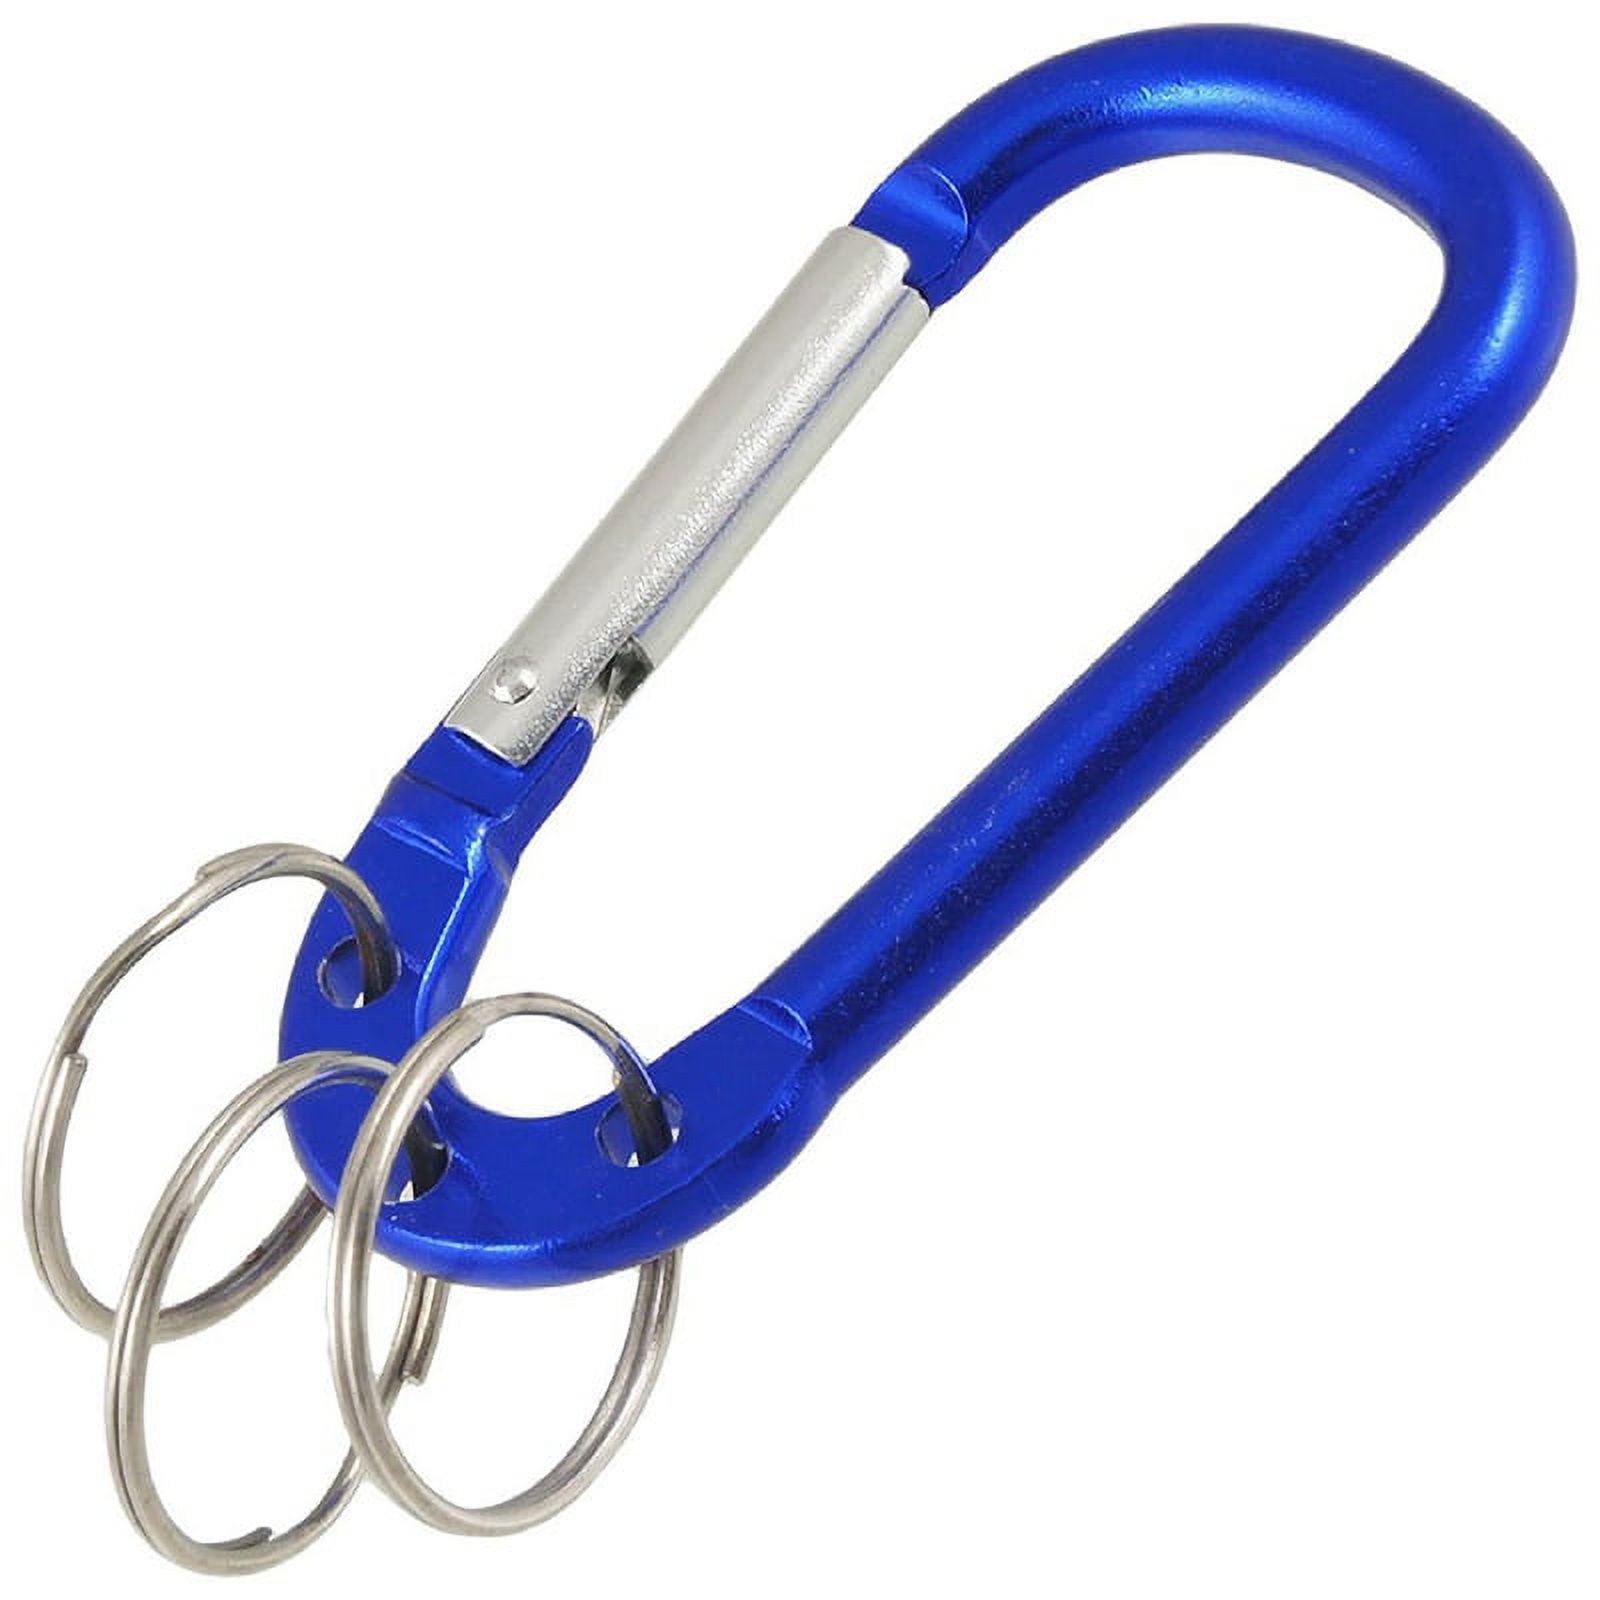 Klein Blue Portable Key Ring Carabiner